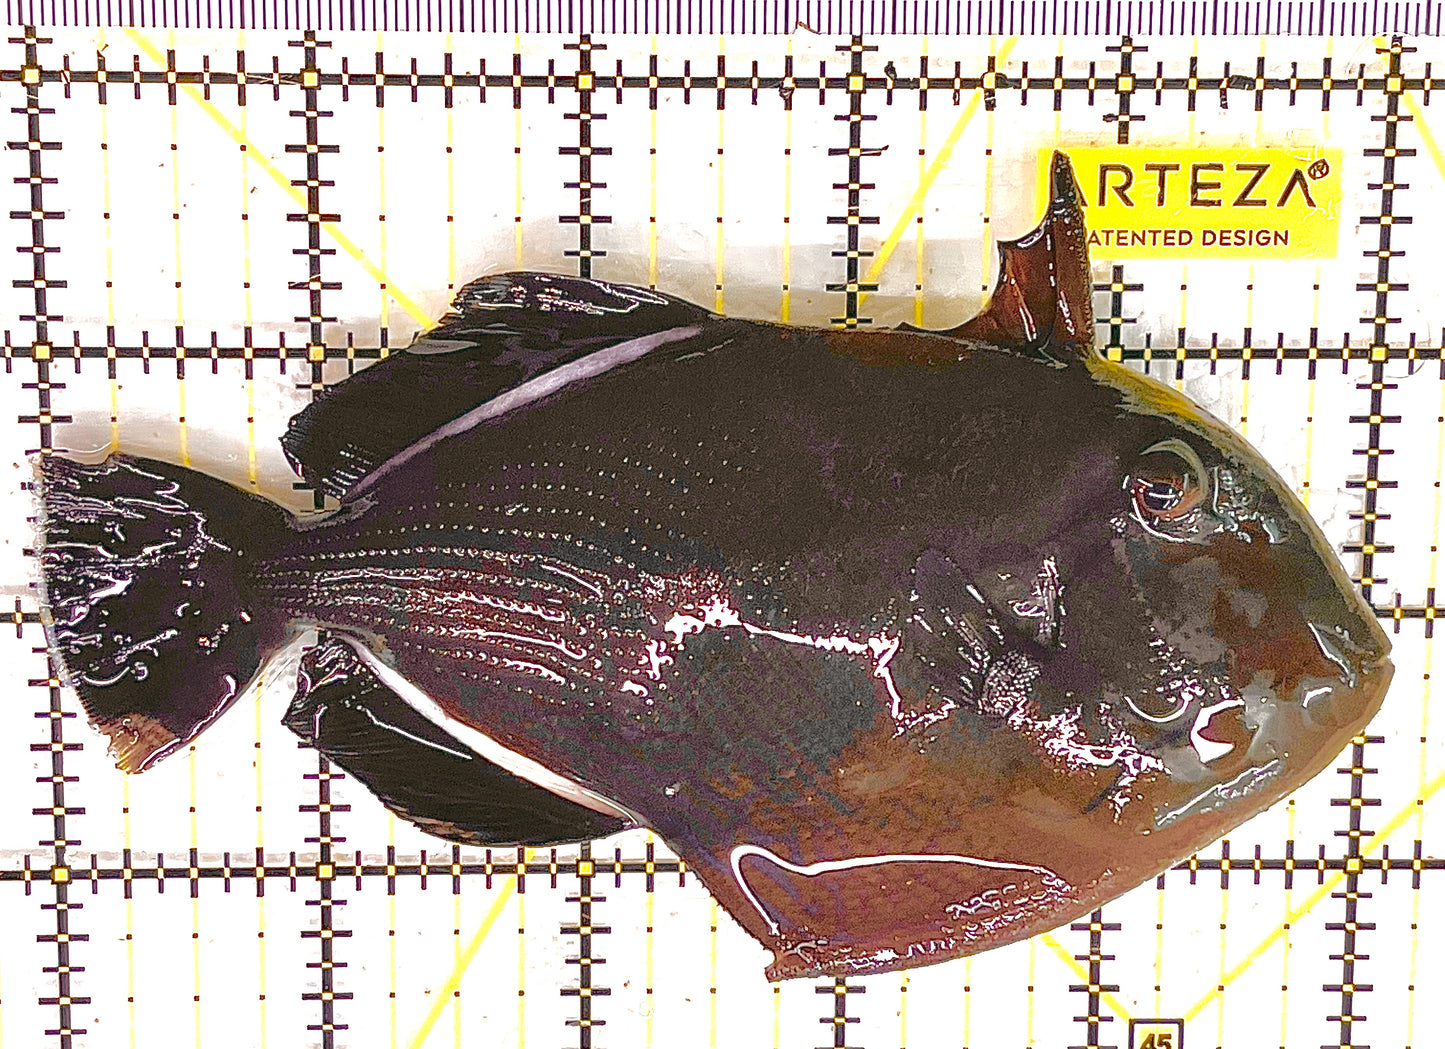 Black Triggerfish BT041301 WYSIWYG Size: XL 5.25" approx